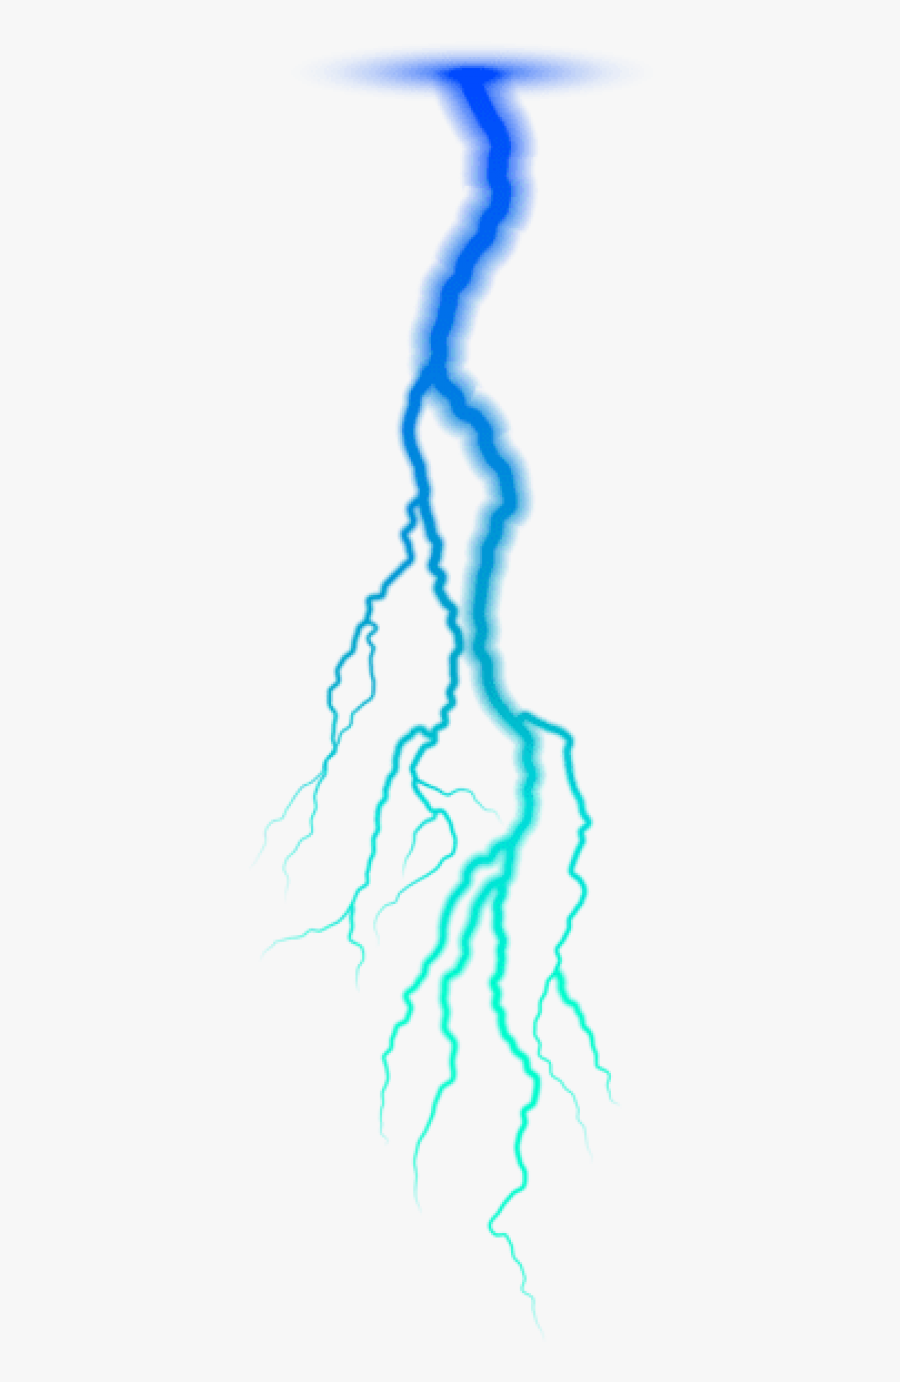 Lightning Png Transparent Background - Blue Lightning Transparent Background, Transparent Clipart